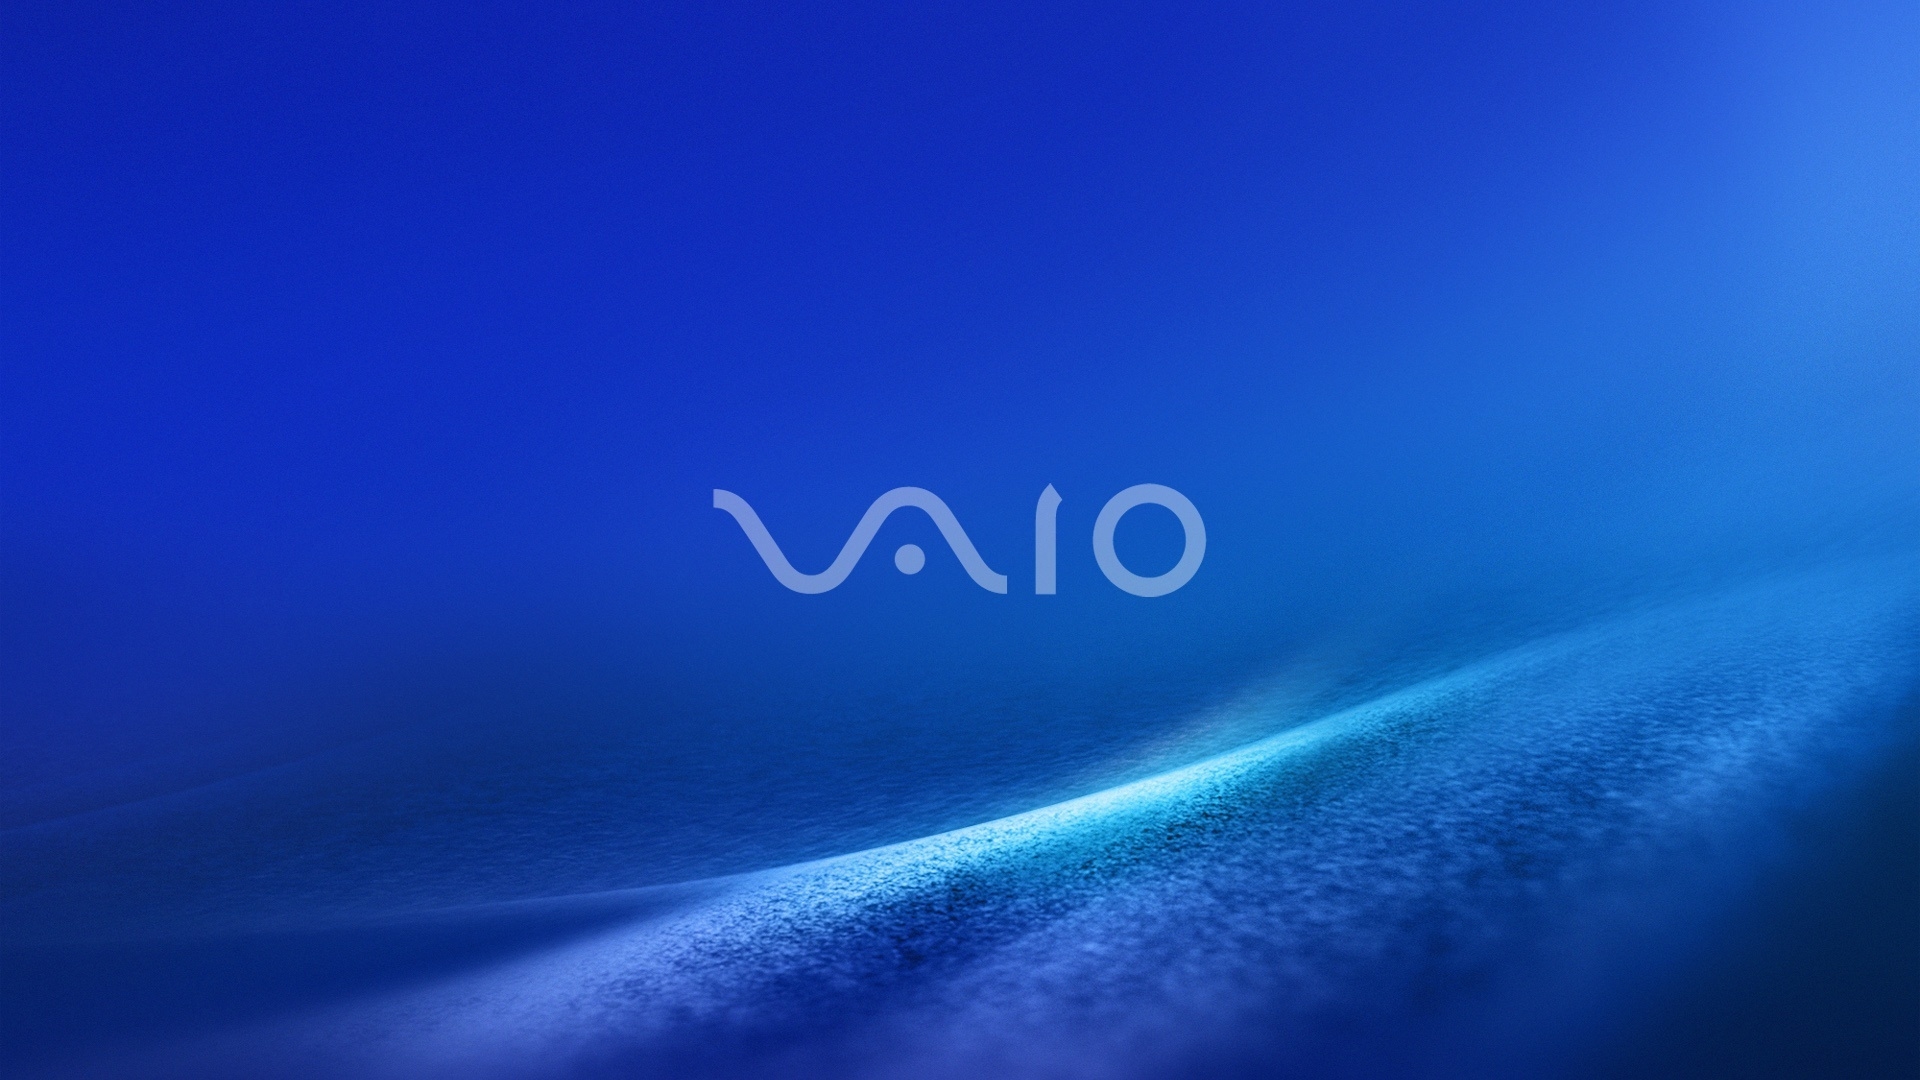 Vaio Dark Blue for 1920 x 1080 HDTV 1080p resolution